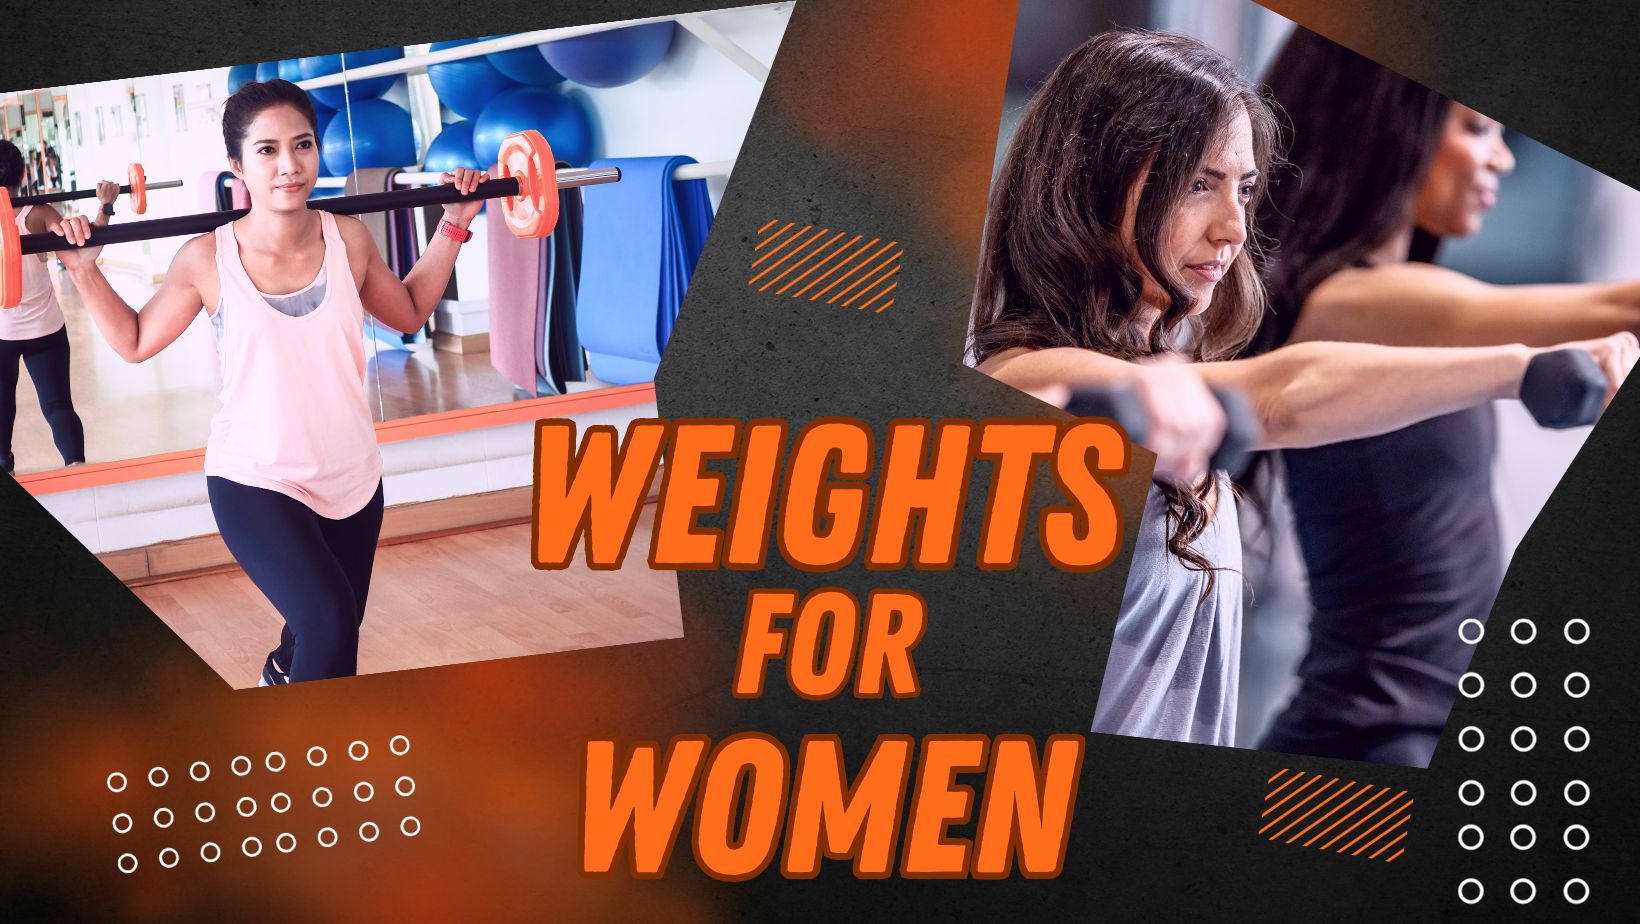 WEIGHTS_FOR_WOMEN.jpg